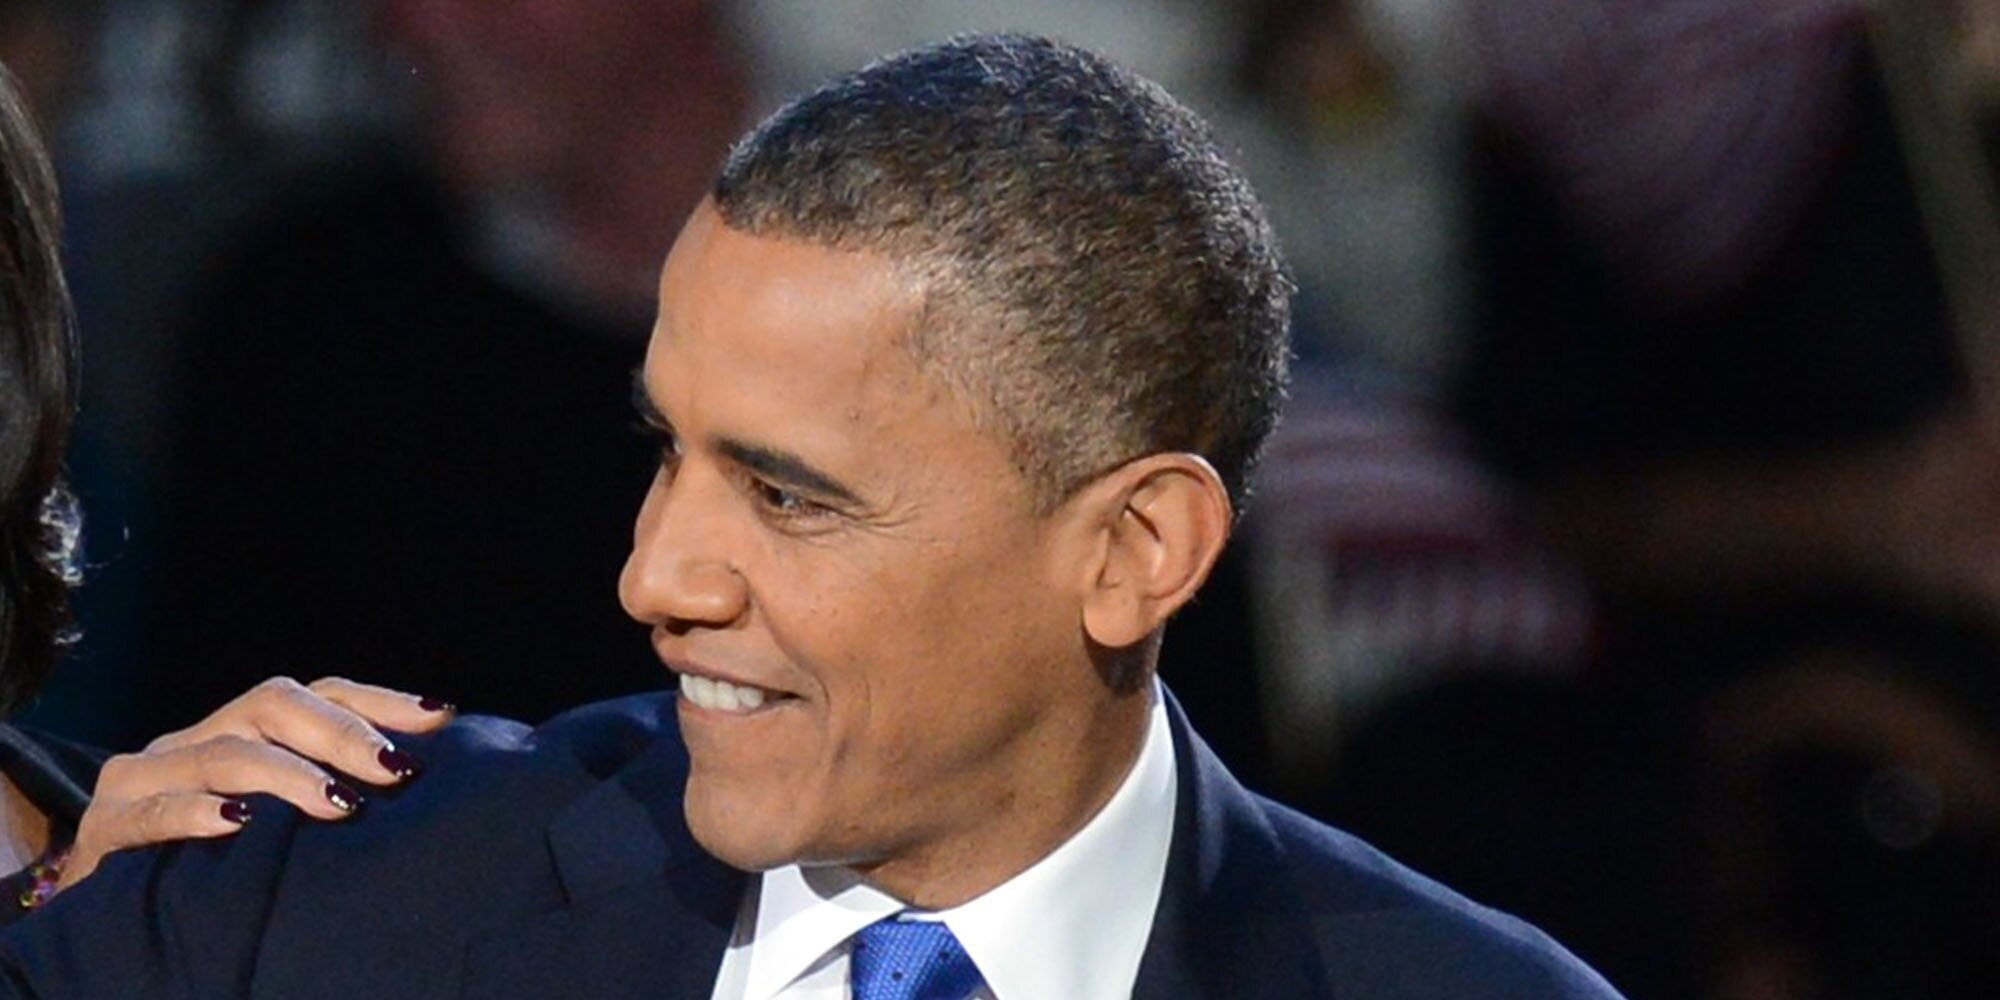 Barack Obama celebra a lo grande su 60 cumpleaños bailando sin distancia de seguridad